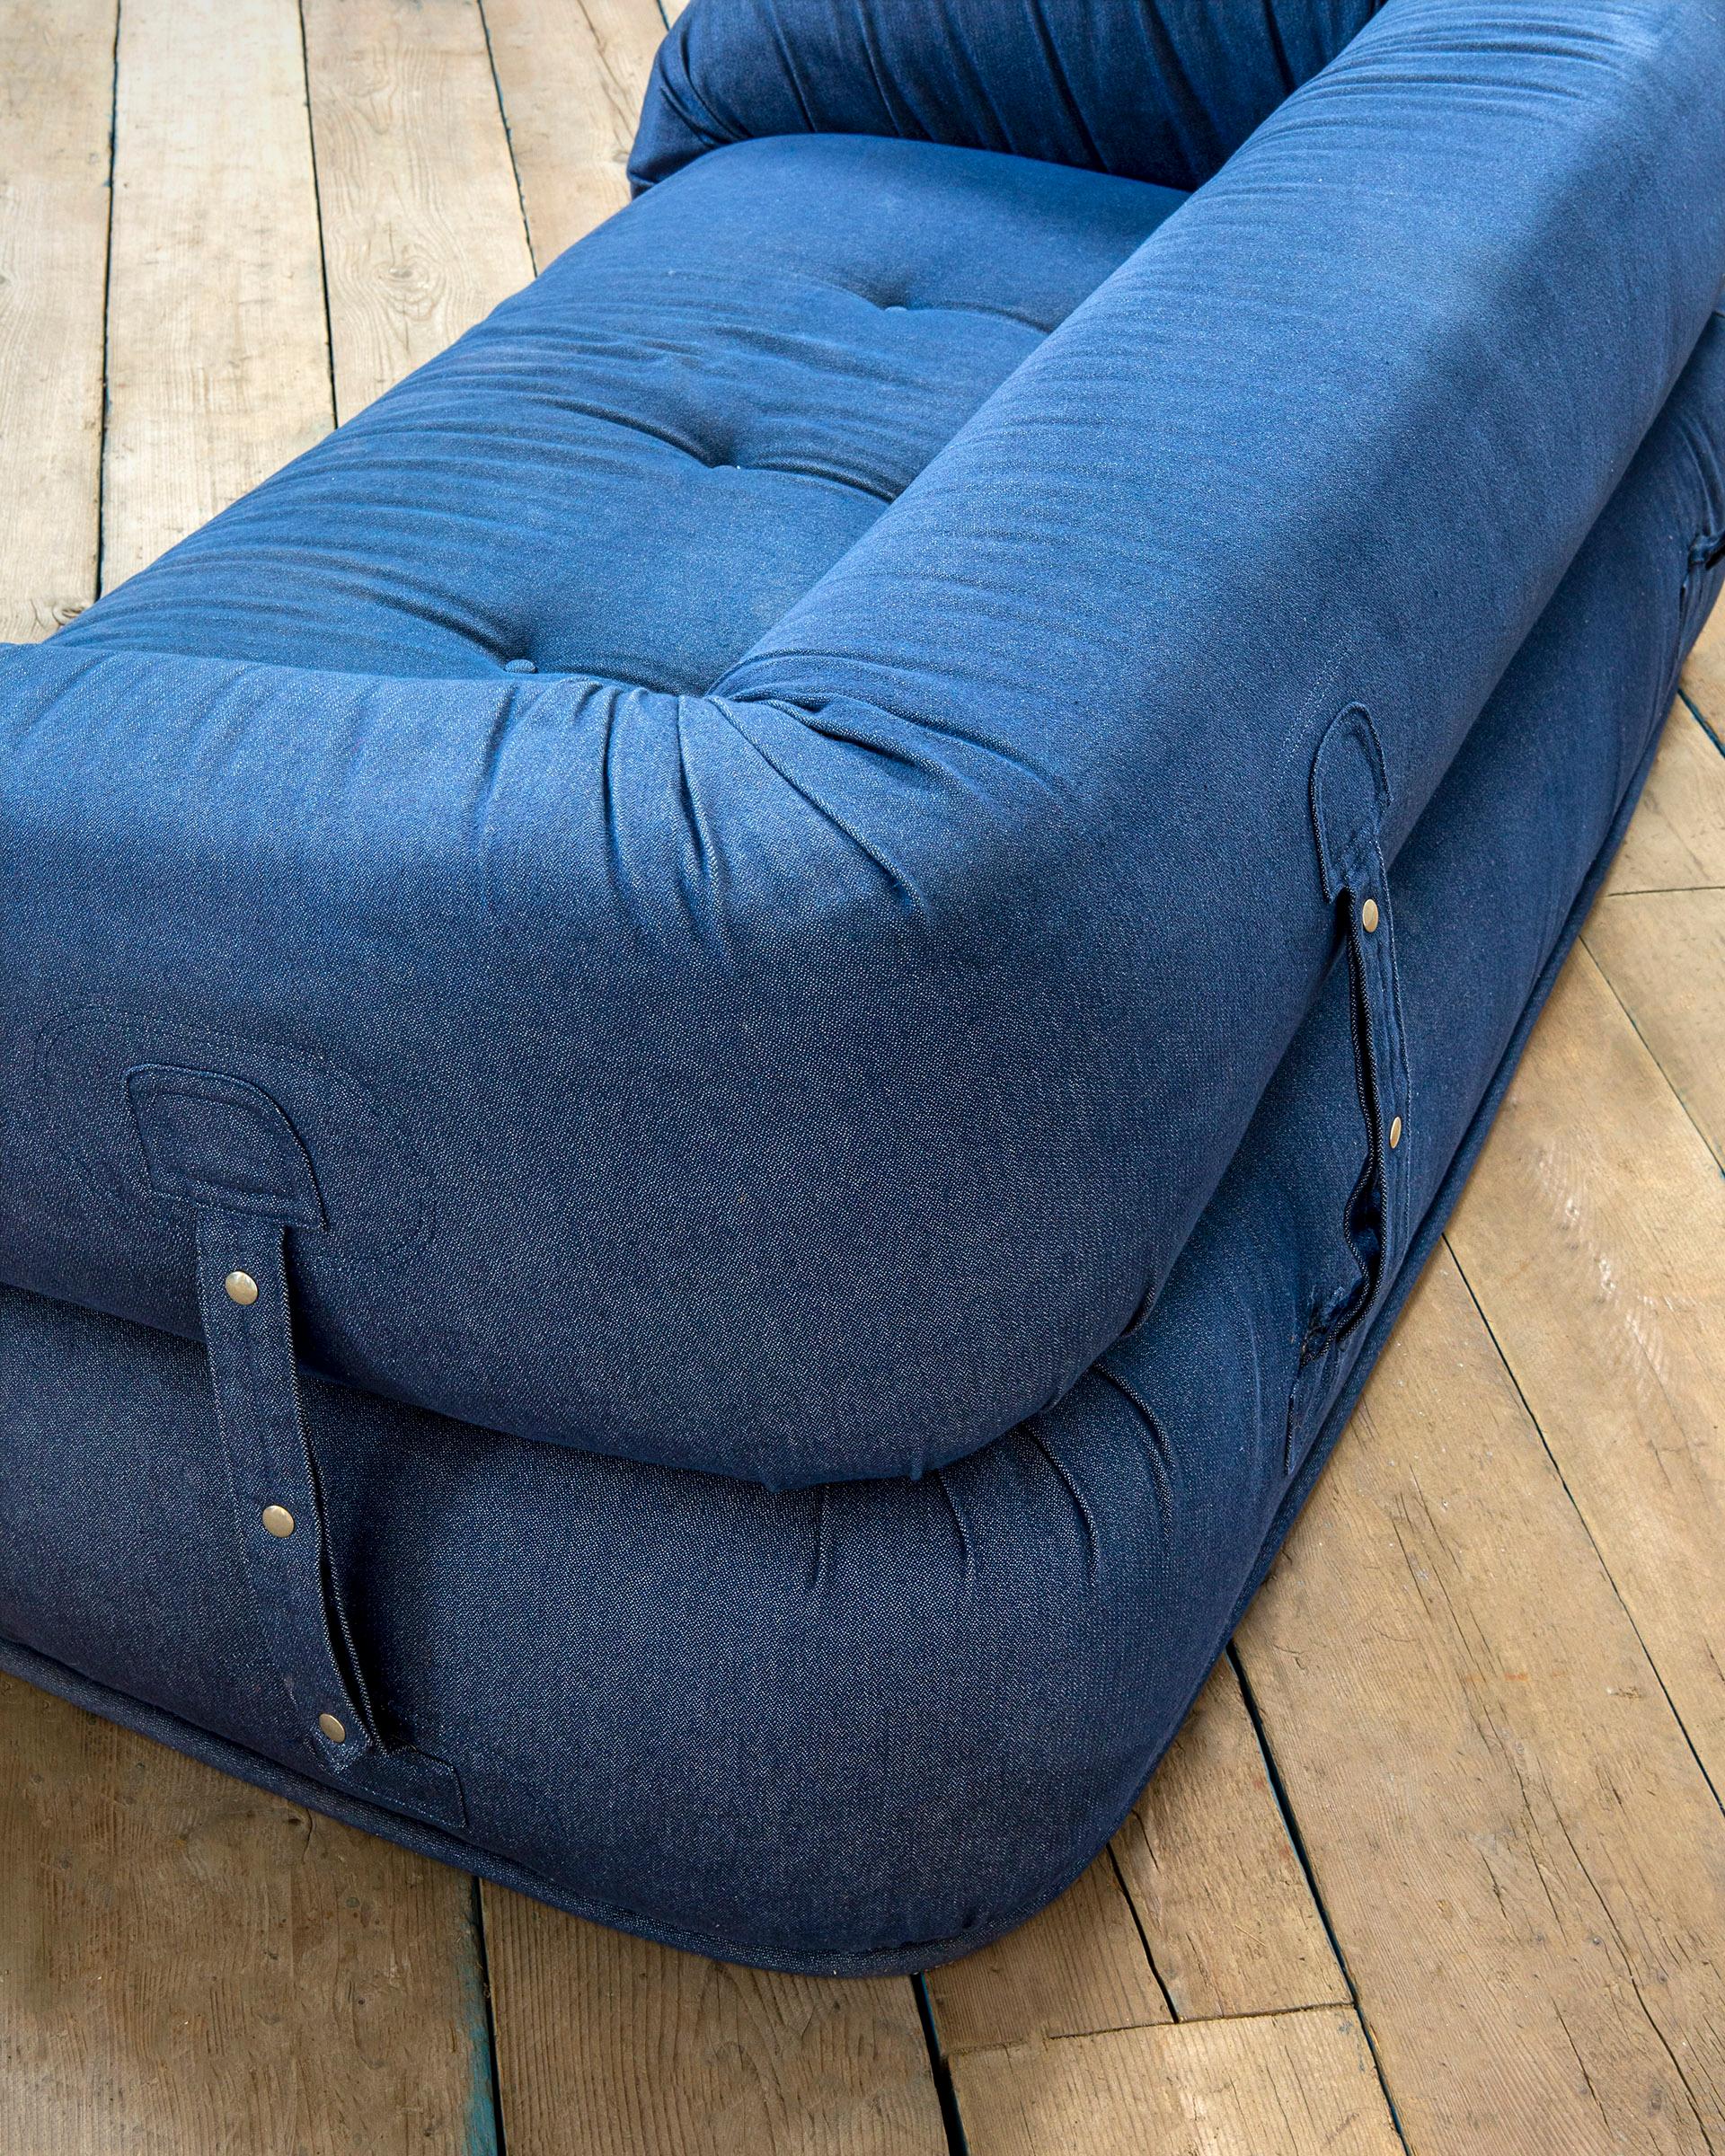 anfibio foldable sofa